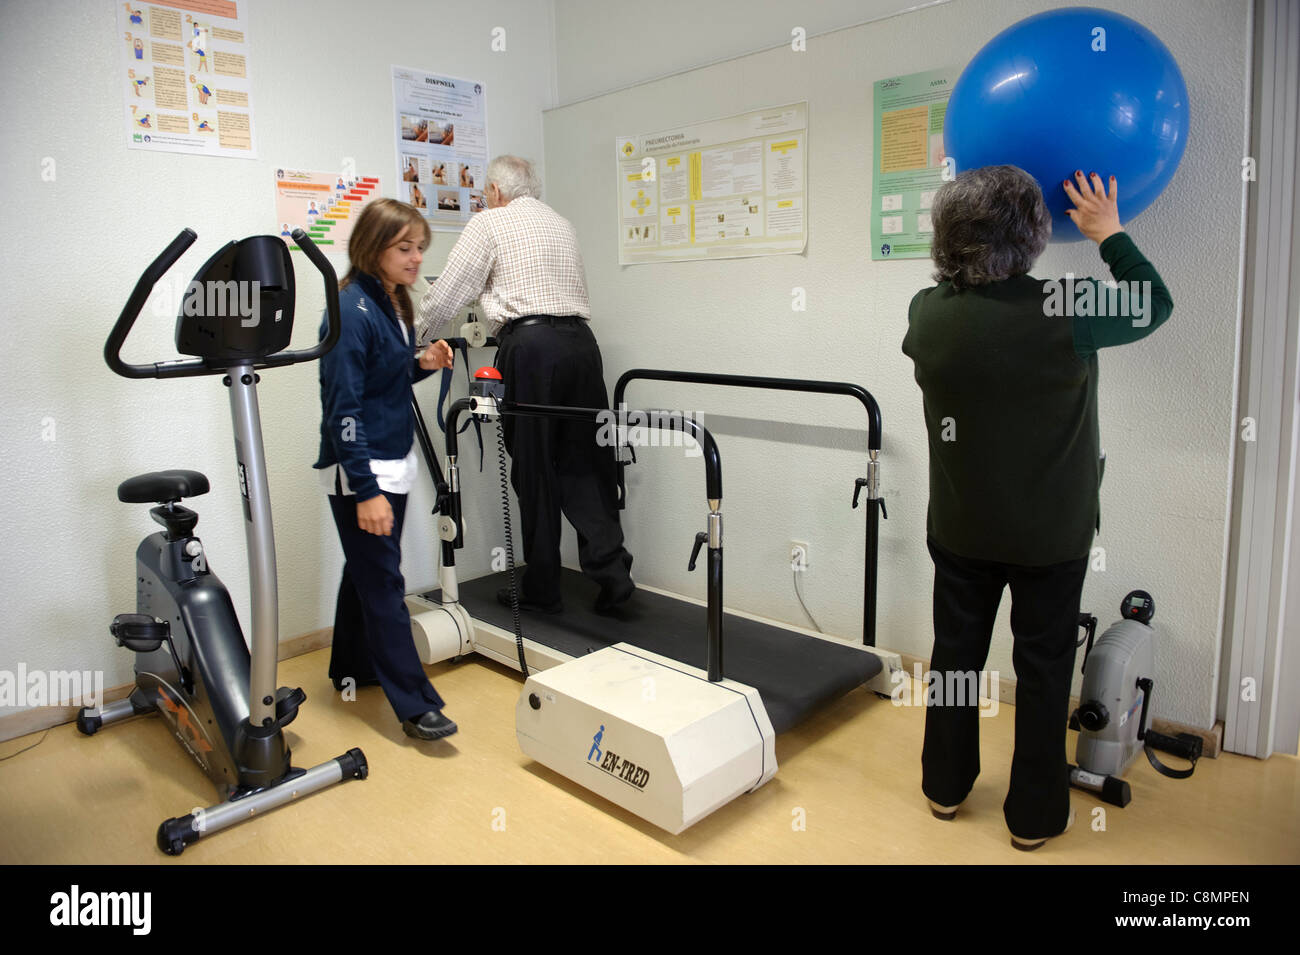 Elderly people exercising at hospital's physical rehabilitation gymn Stock Photo